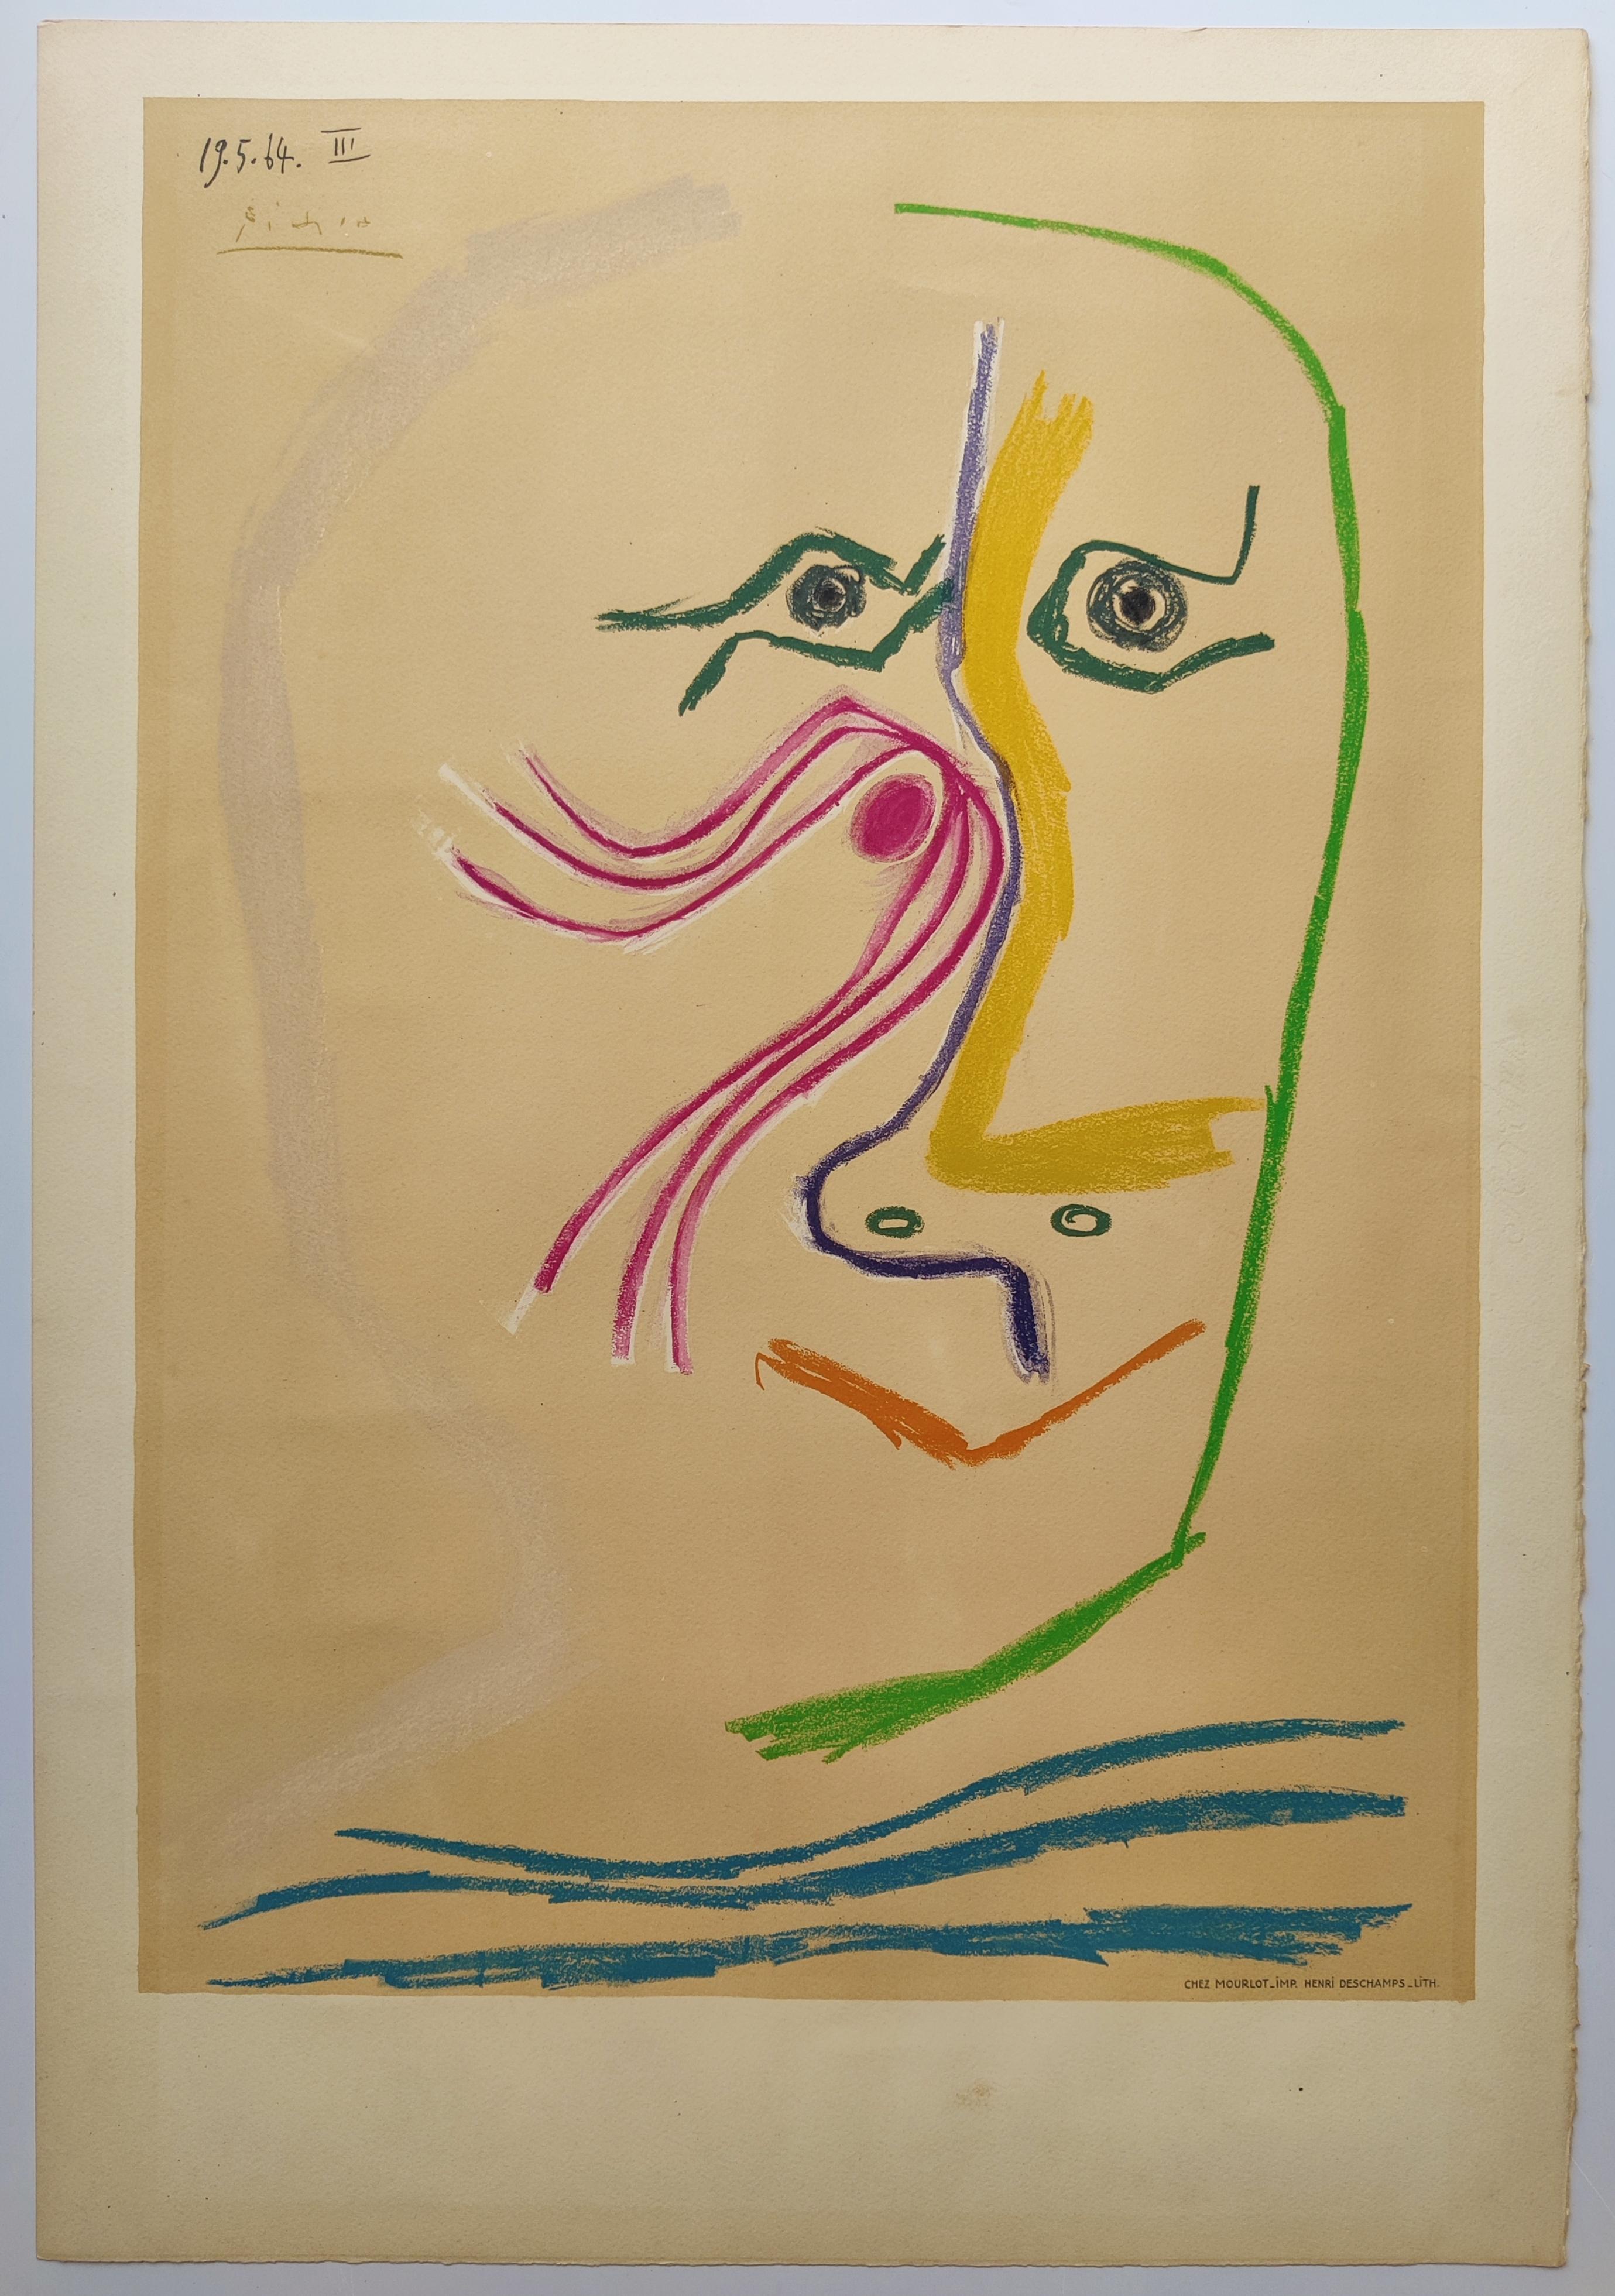 Pablo Picasso
Hommage an René Char, 1969
Farblithografie auf Arches-Waffelpapier  von Henri Deschamps, Paris
In der Platte signiert 
Bildgröße: 63,6 x 44,7 cm
Blattgröße: 75,7 x 52 cm
Gedruckt bei Mourlot, Paris
Herausgegeben vom Musée Municipal